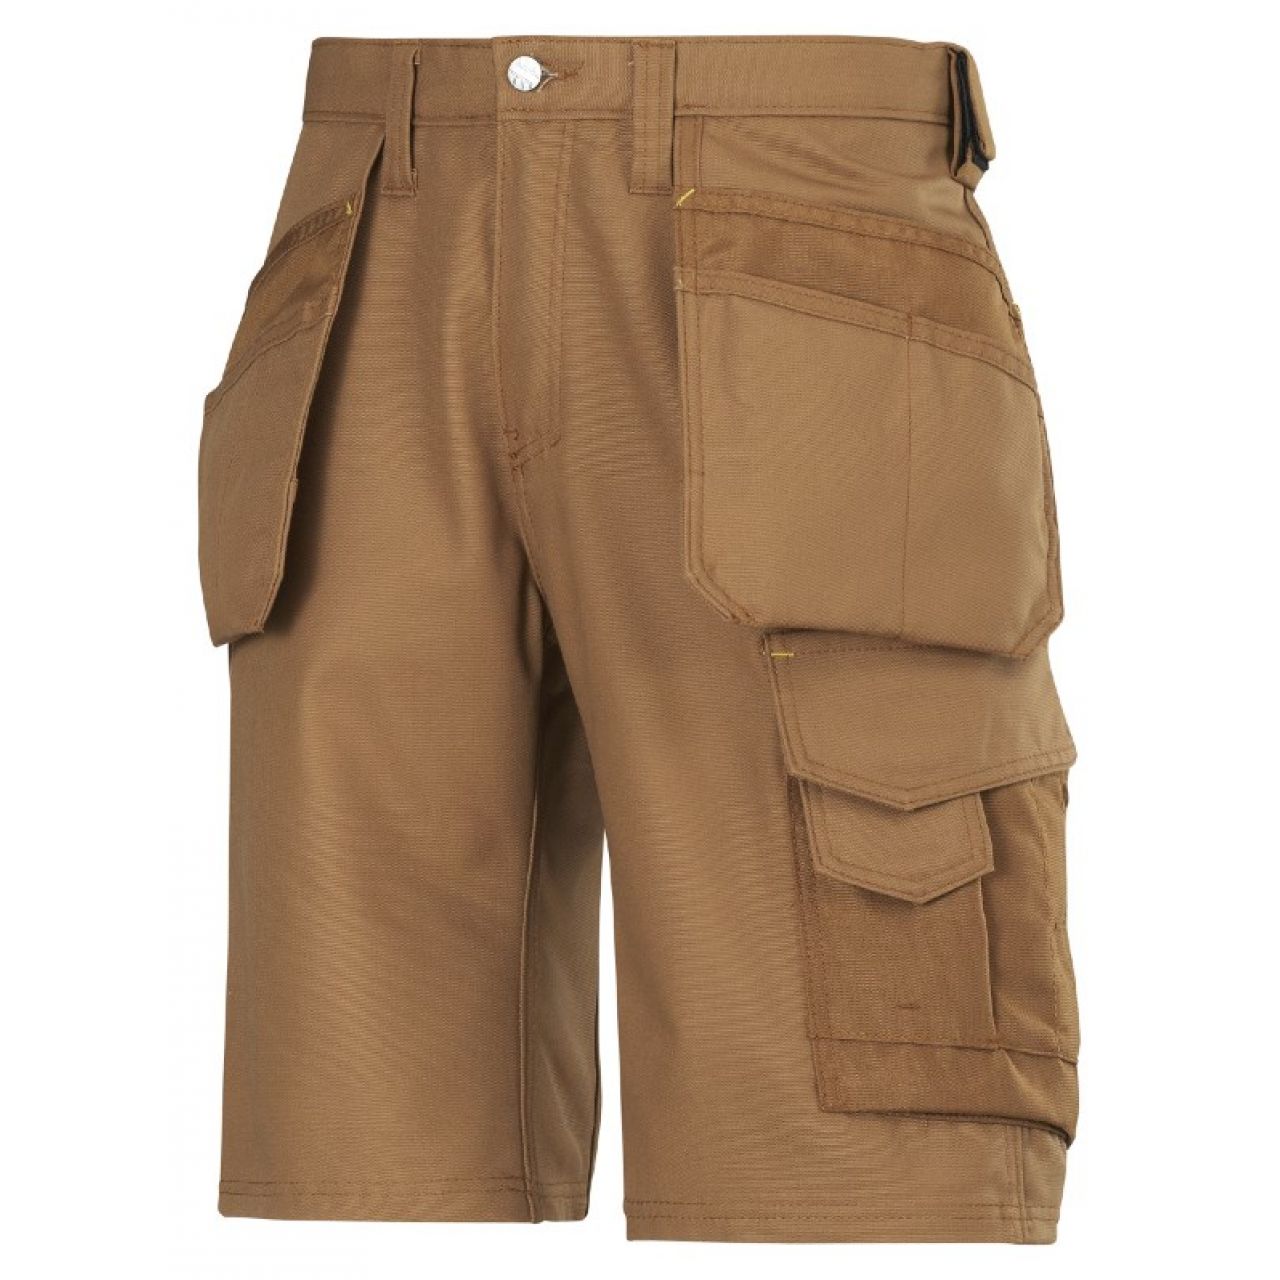 3014 Pantalones cortos de trabajo con bolsillos flotantes Canvas+ marron talla 56